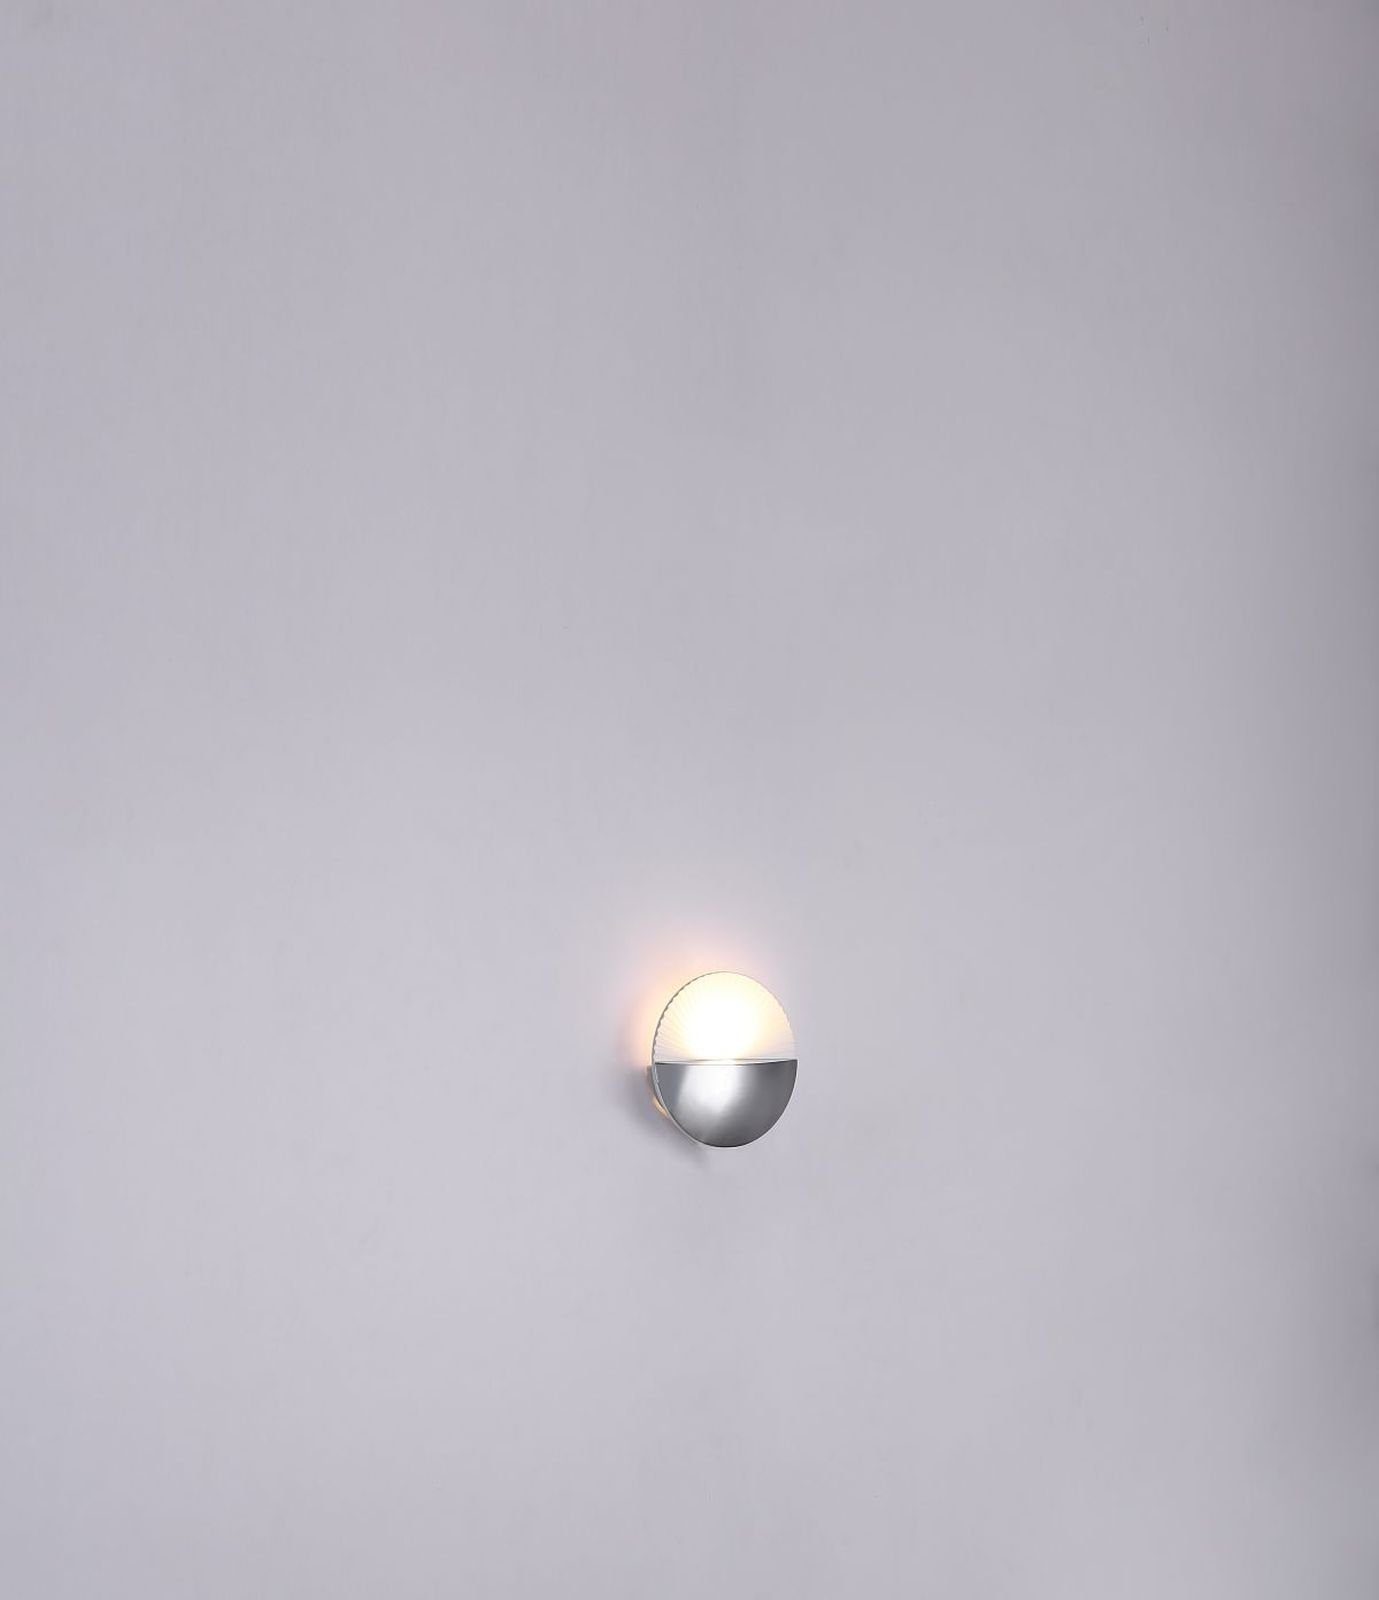 LED Flur GLOBO Innen Schlafzimmer Wandlampe Globo Wandleuchte Wandleuchte Wohnzimmer